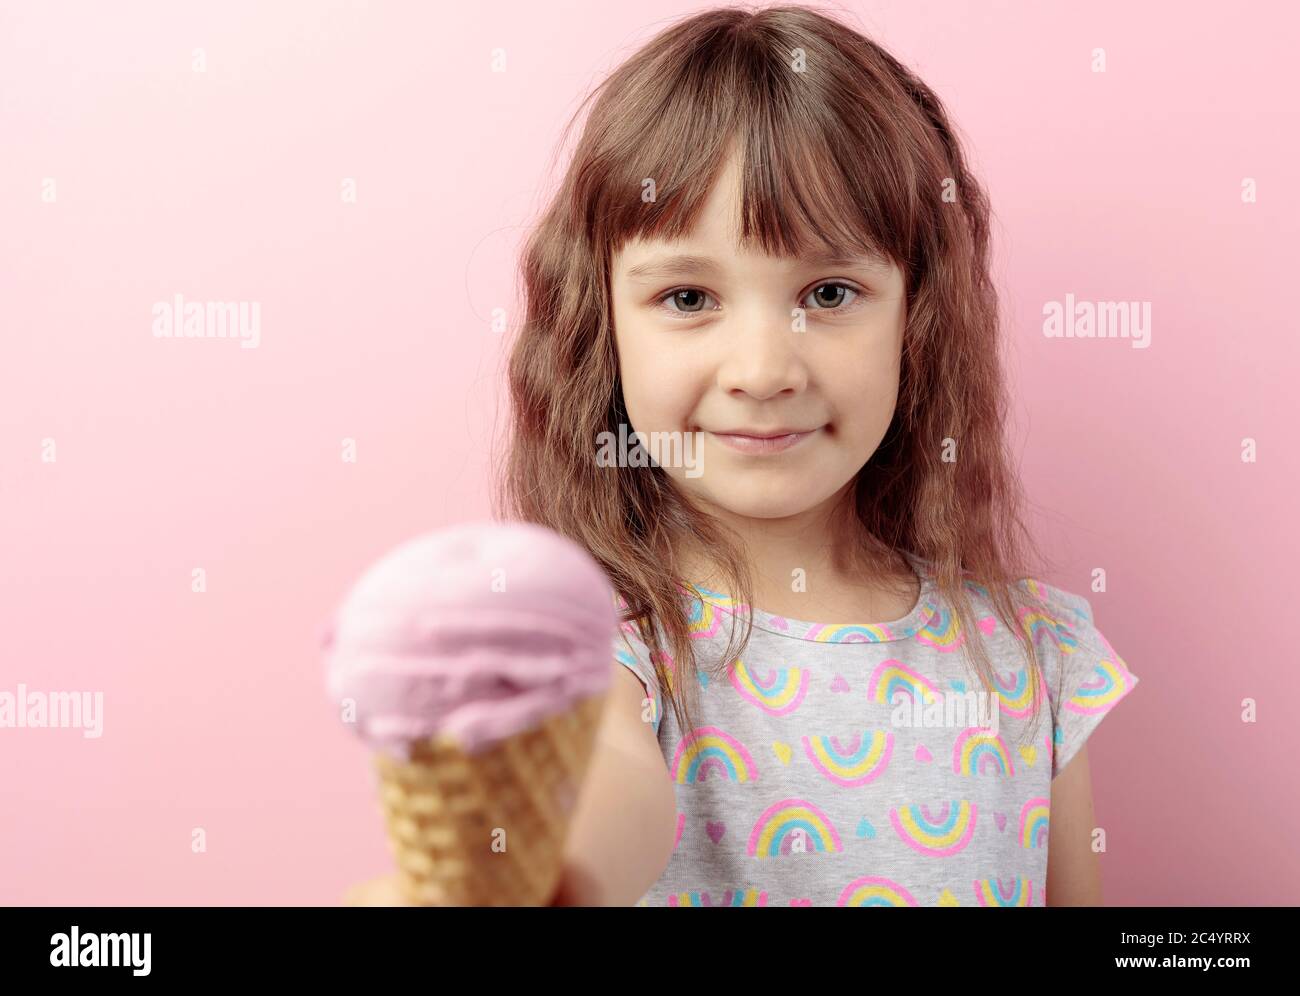 Das fünfjährige Mädchen hält ihre Hand mit Eis aus. Liebenswert kleines Mädchen mit leckeren Eis vor rosa Hintergrund. Selektiver Fokus. Stockfoto